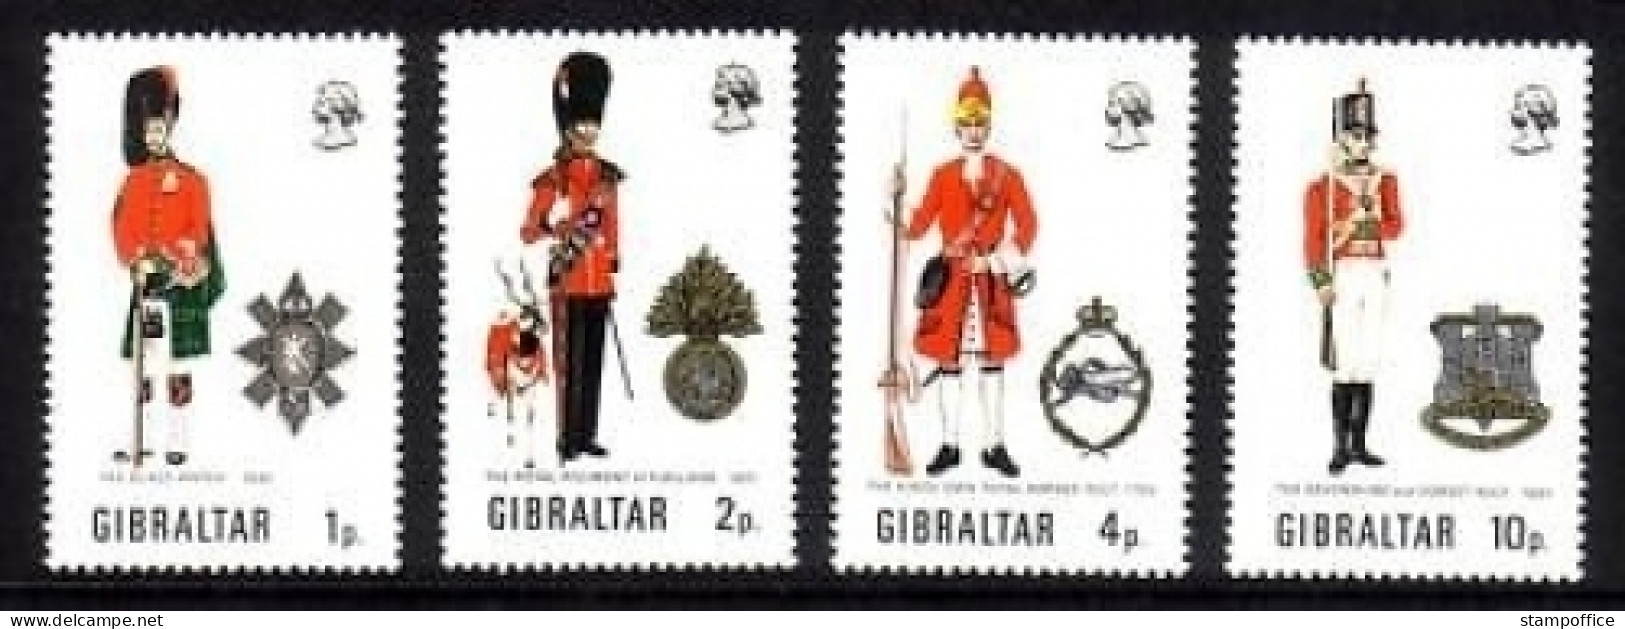 GIBRALTAR MI-NR. 279-282 POSTFRISCH(MINT) MILITÄRUNIFORMEN (III) - Gibraltar